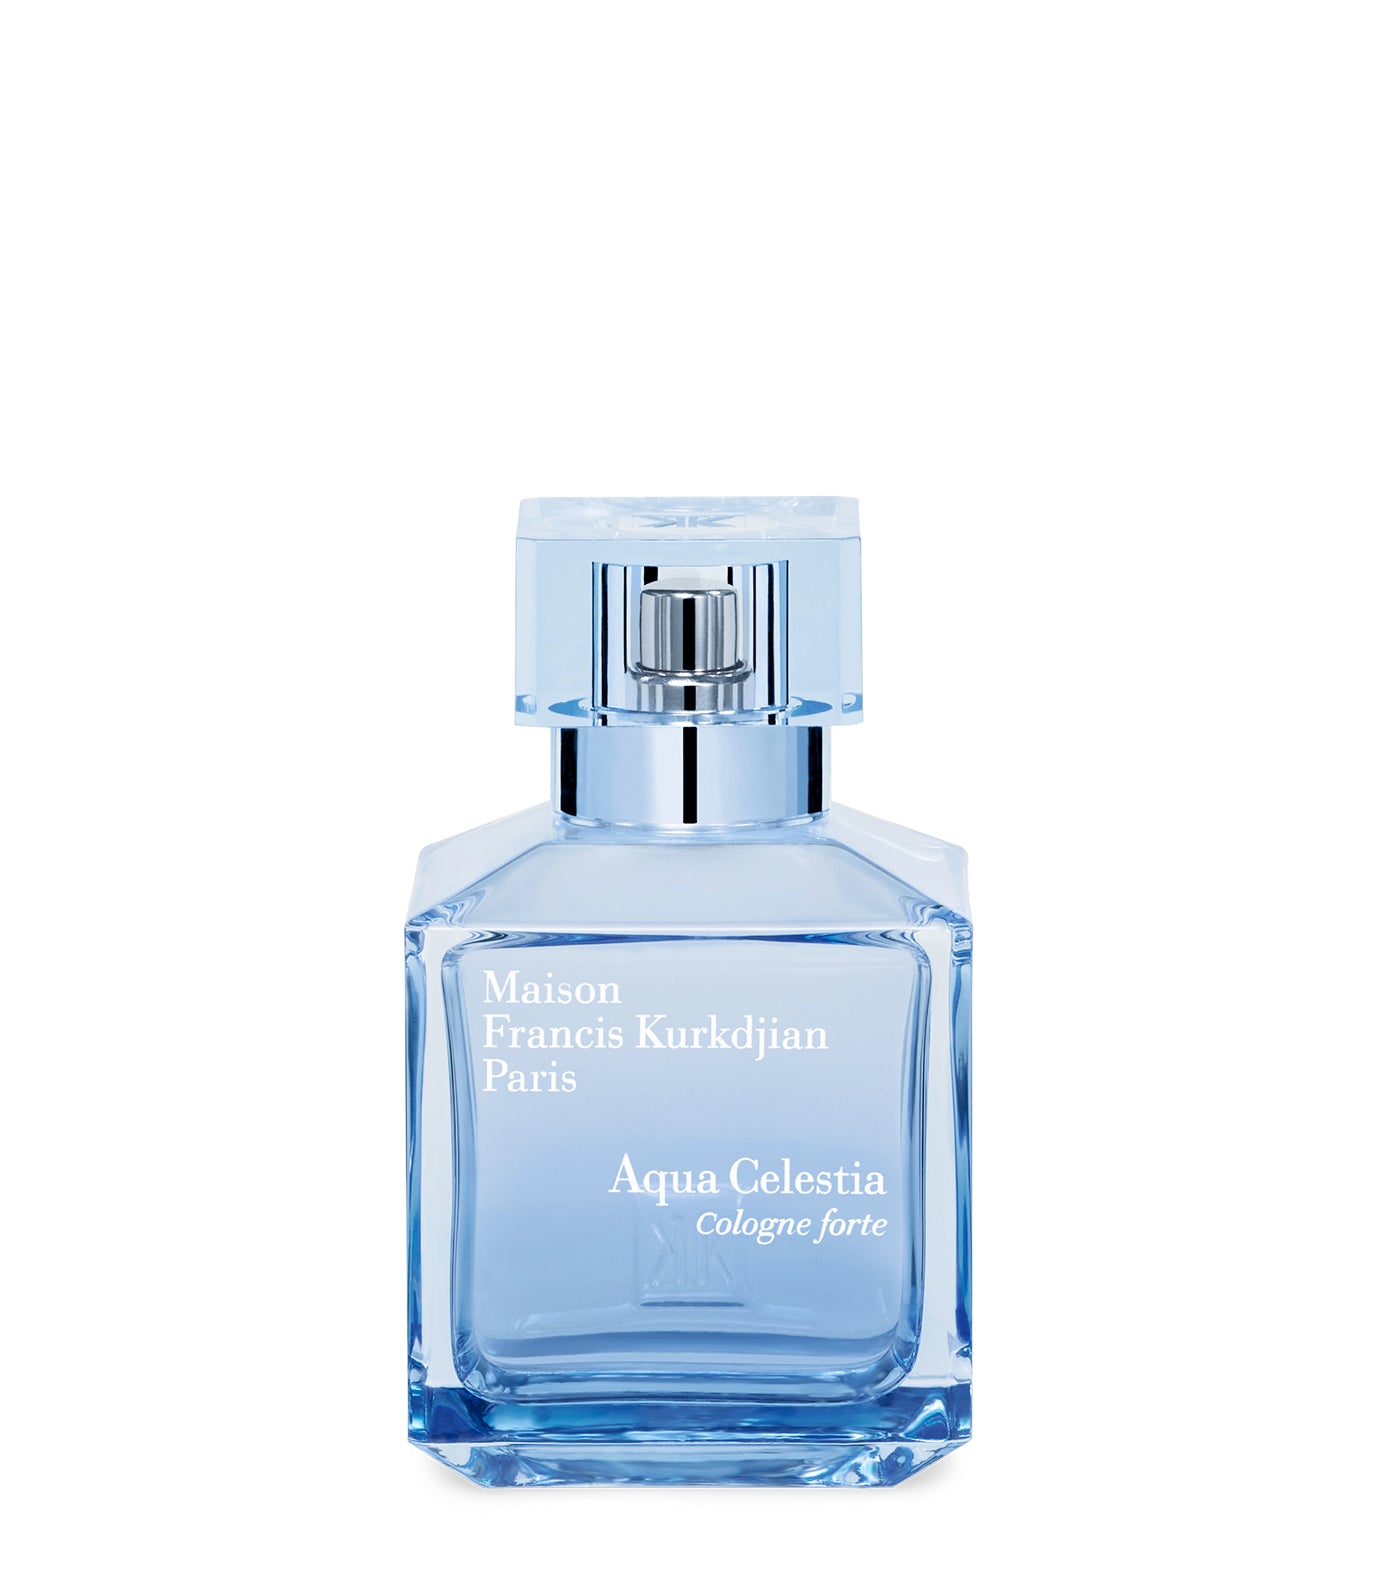 Aqua Celestia Cologne forte Eau de Parfum